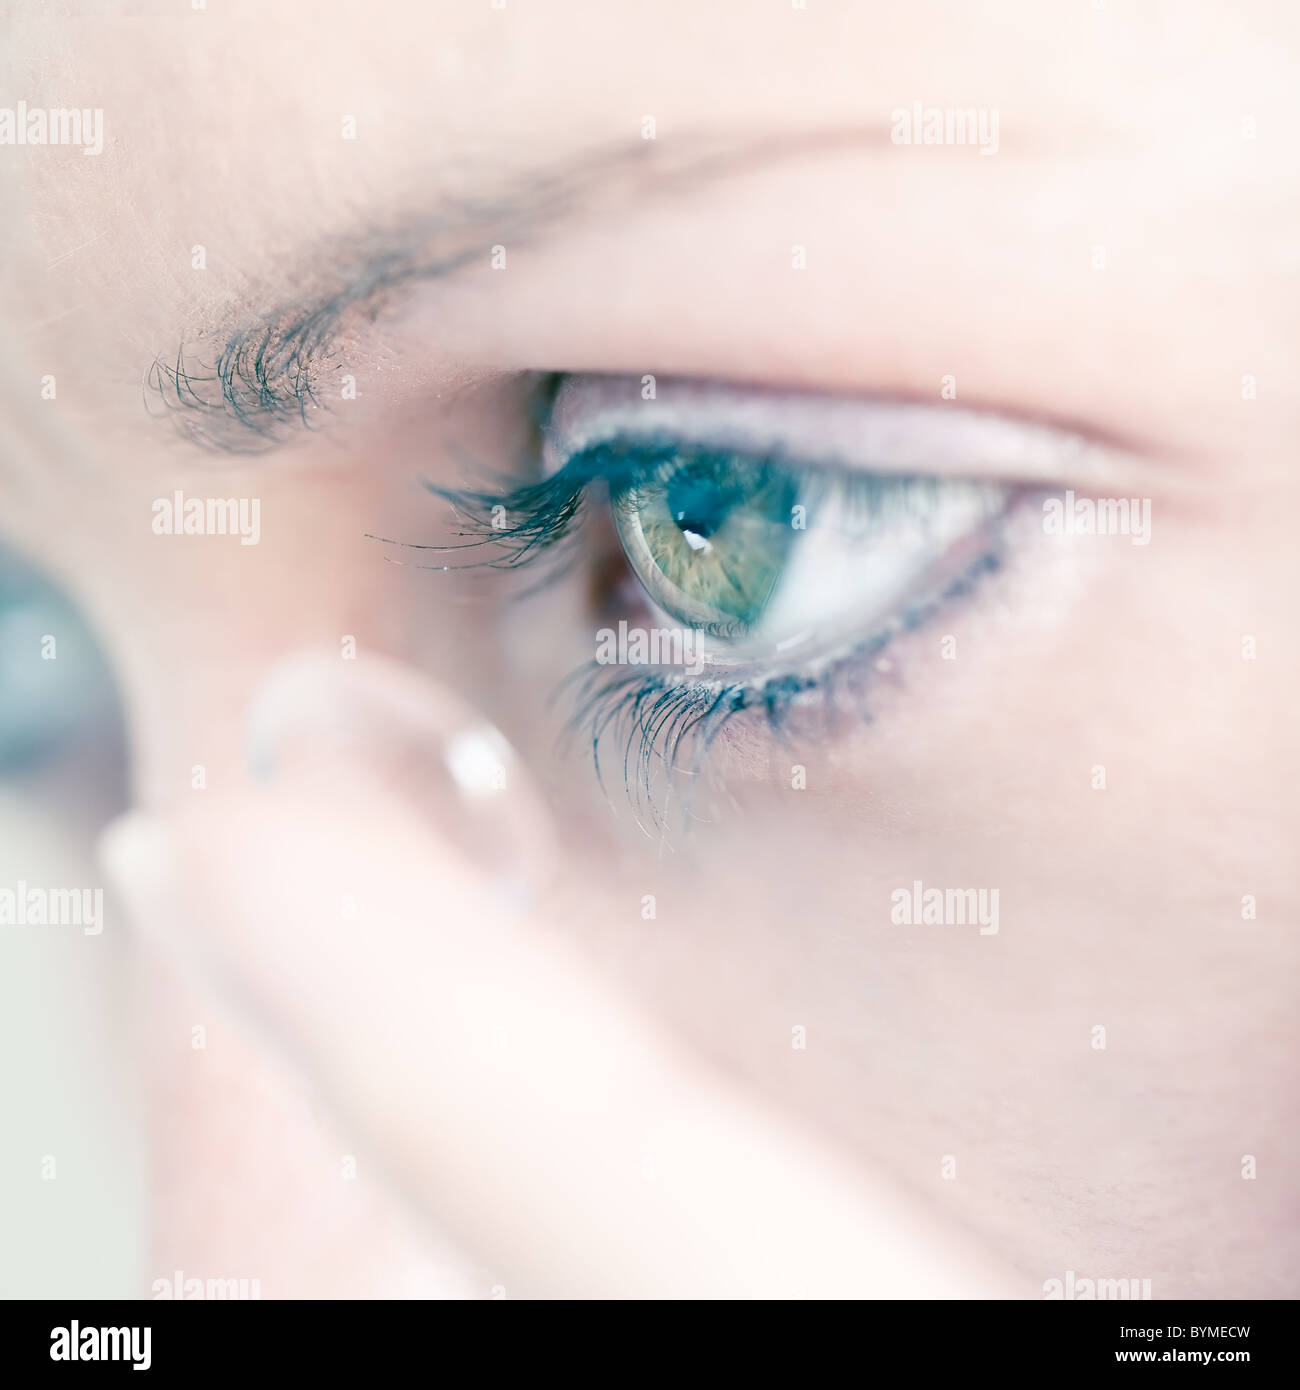 Jeune femme l'insertion d'une lentille de contact dans l'œil, close-up Banque D'Images